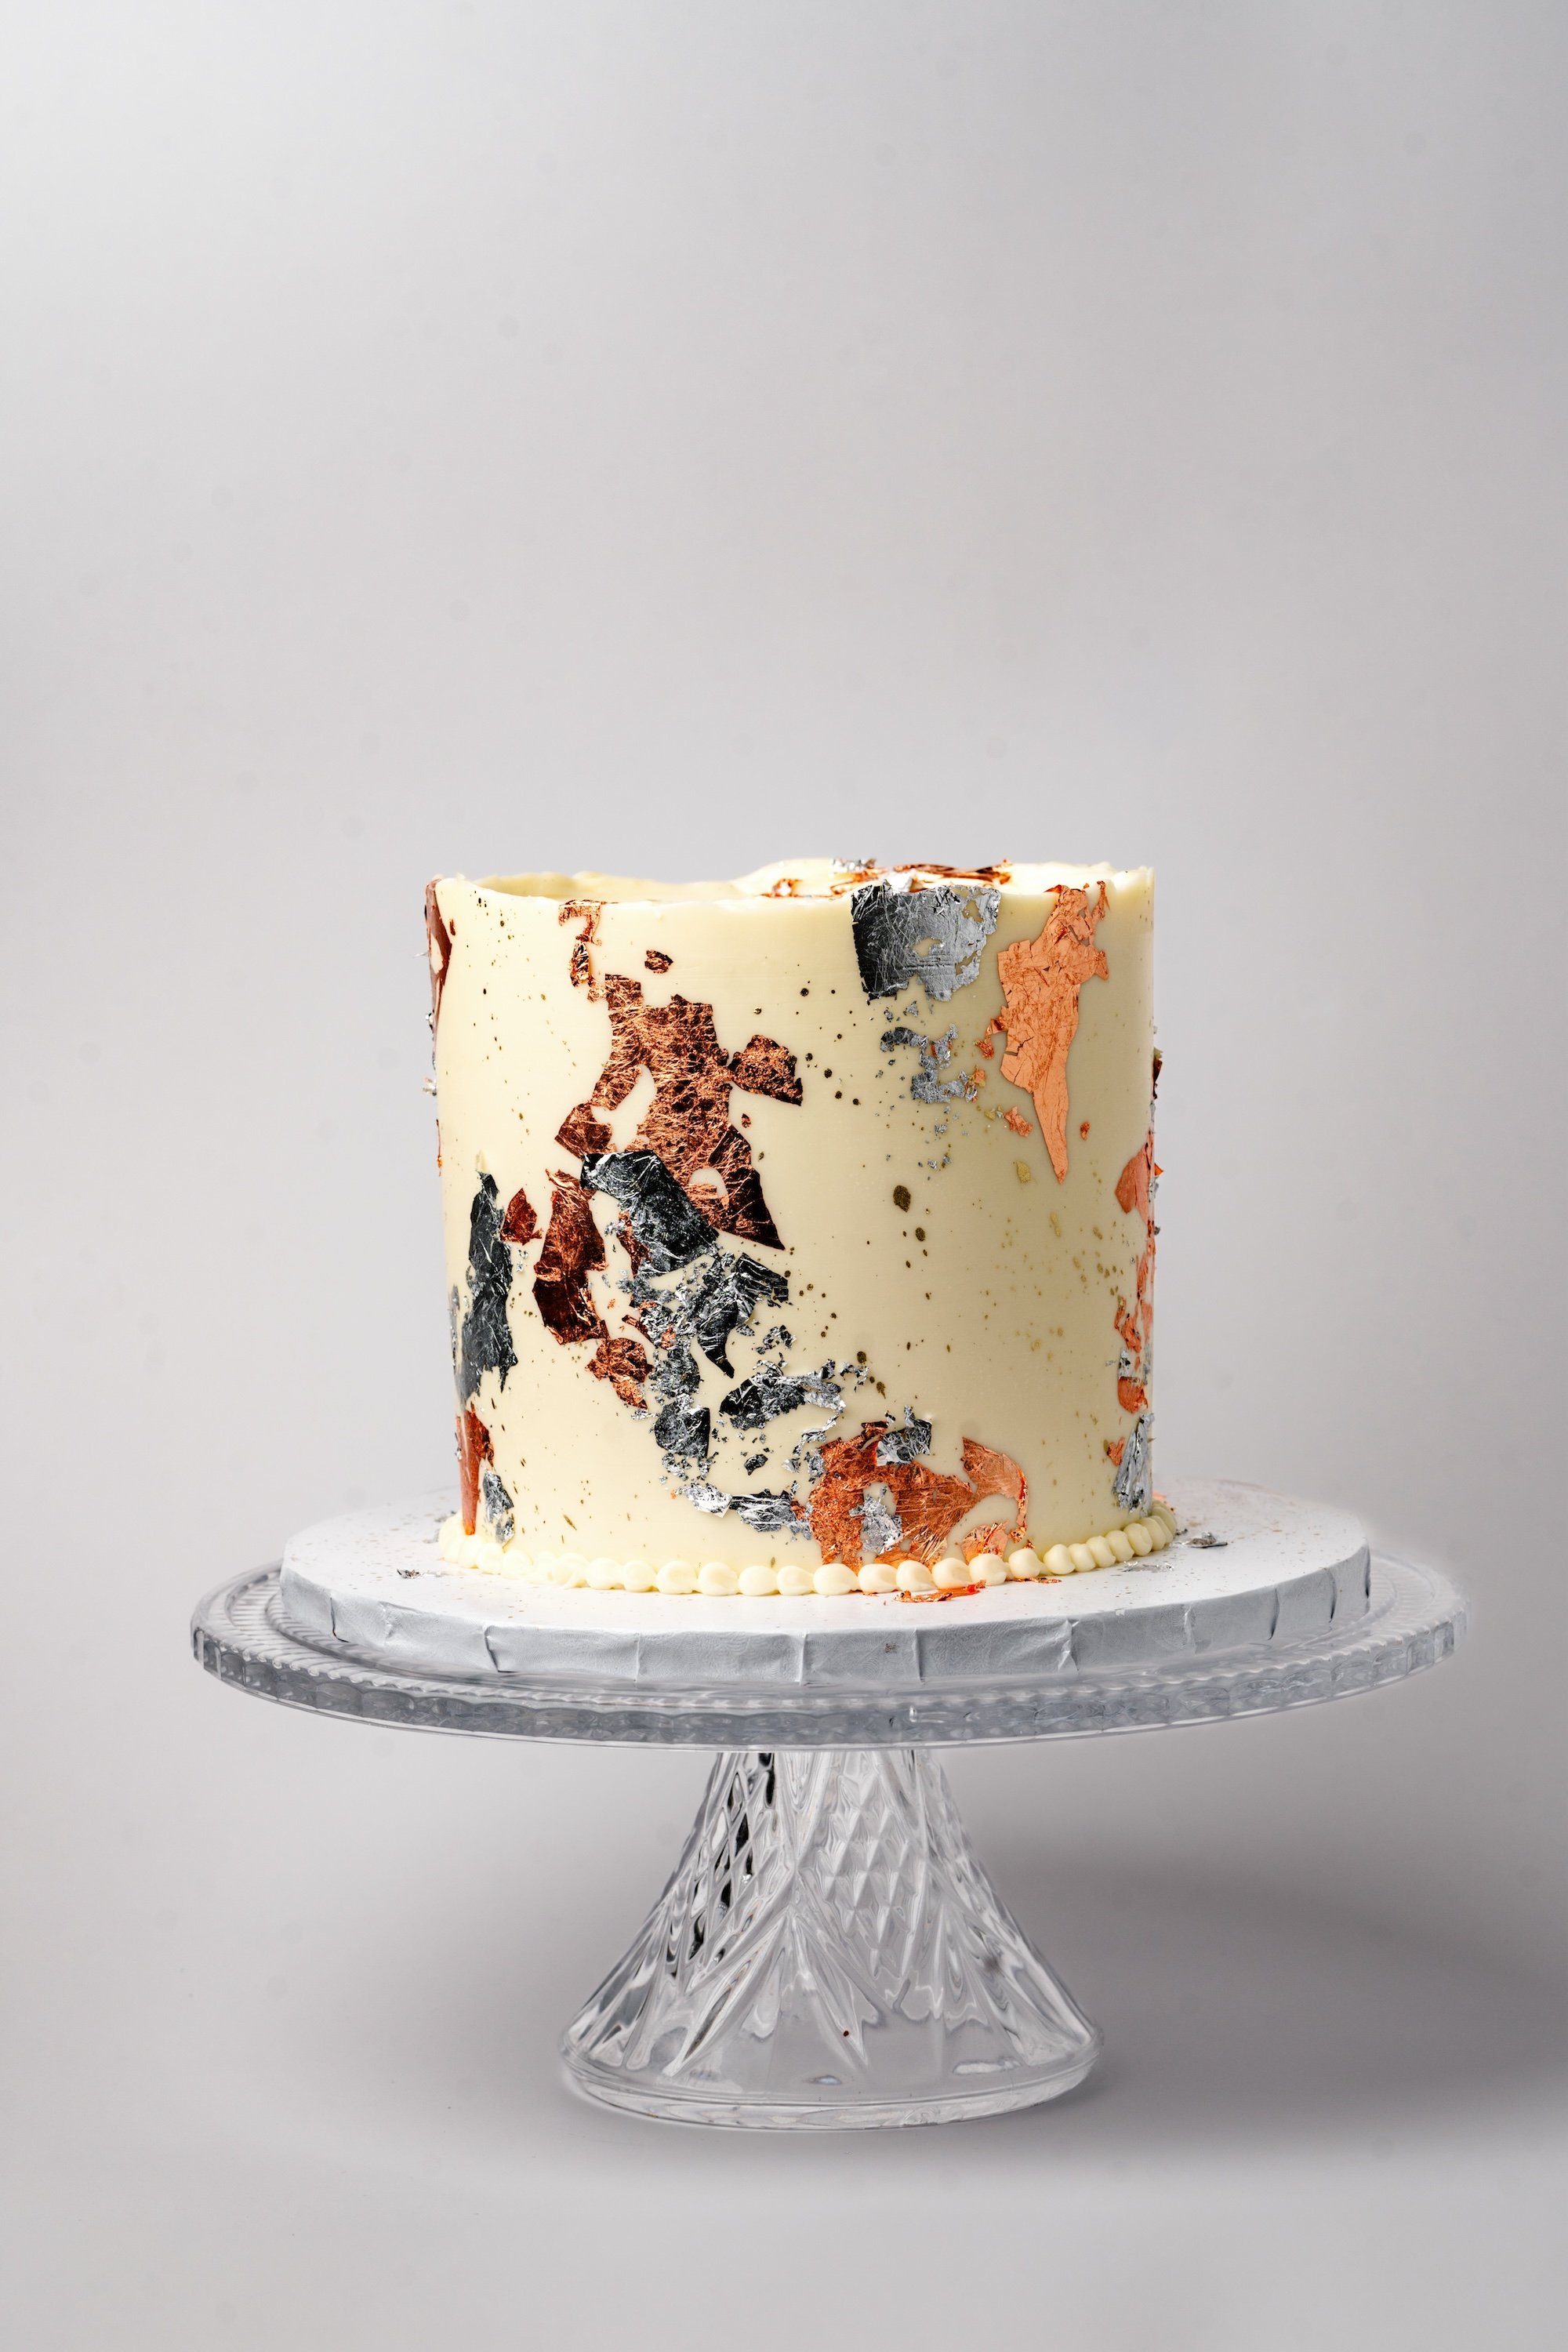 ECBG Cake Studio Custom Chicago Bakery Cakes Metallic Splatter 1.jpg